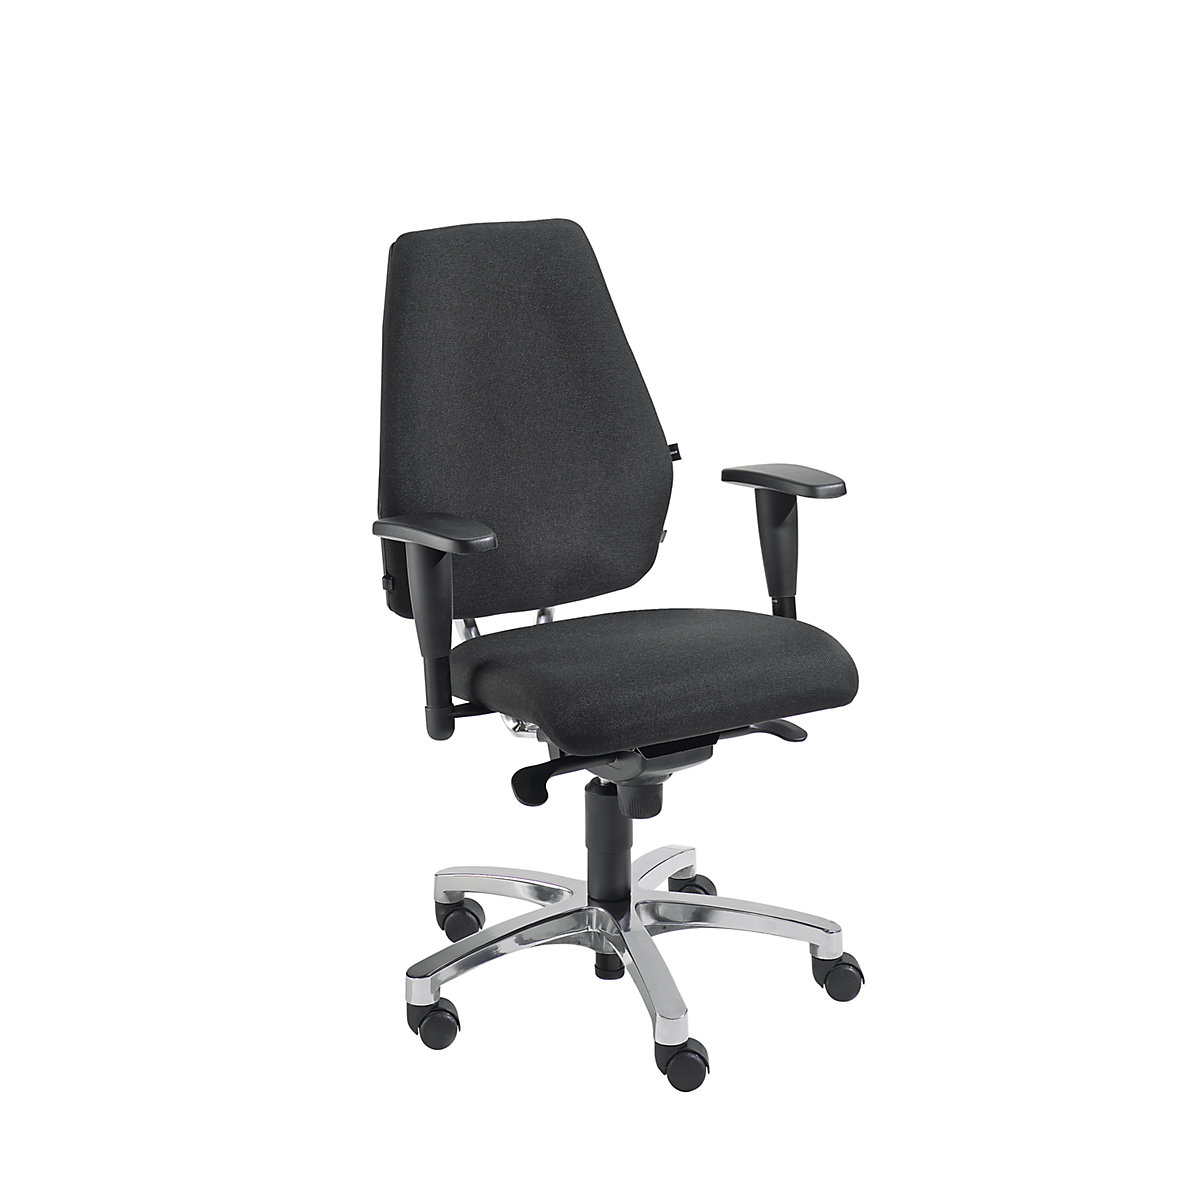 Siège de bureau pivotant, mécanisme synchrone – Topstar, assise plate arrondie au niveau des genoux et Body Balance Tec®, noir